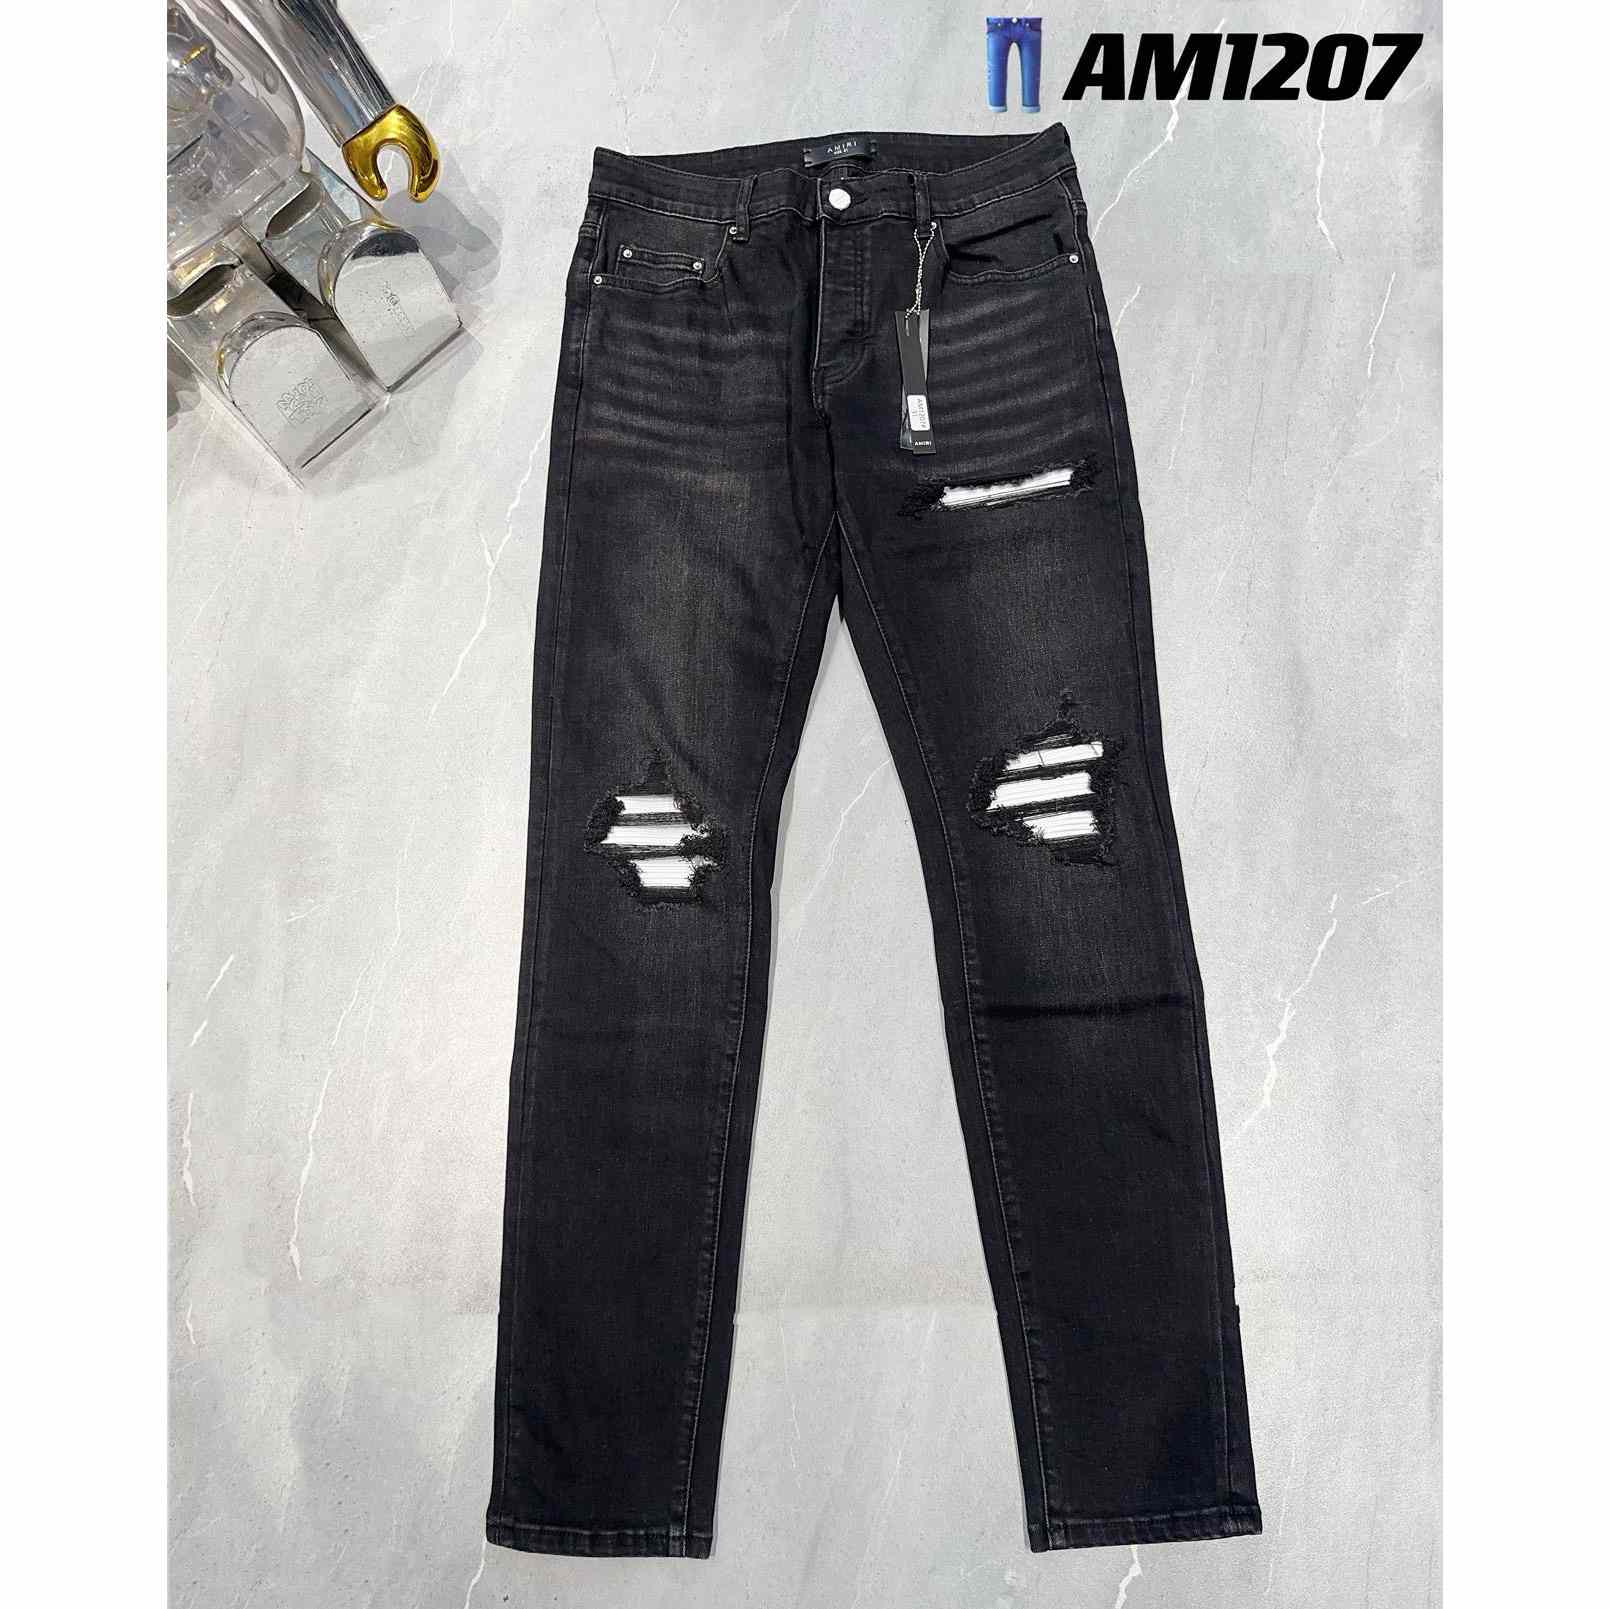 Amiri Jeans     AM1207 - DesignerGu